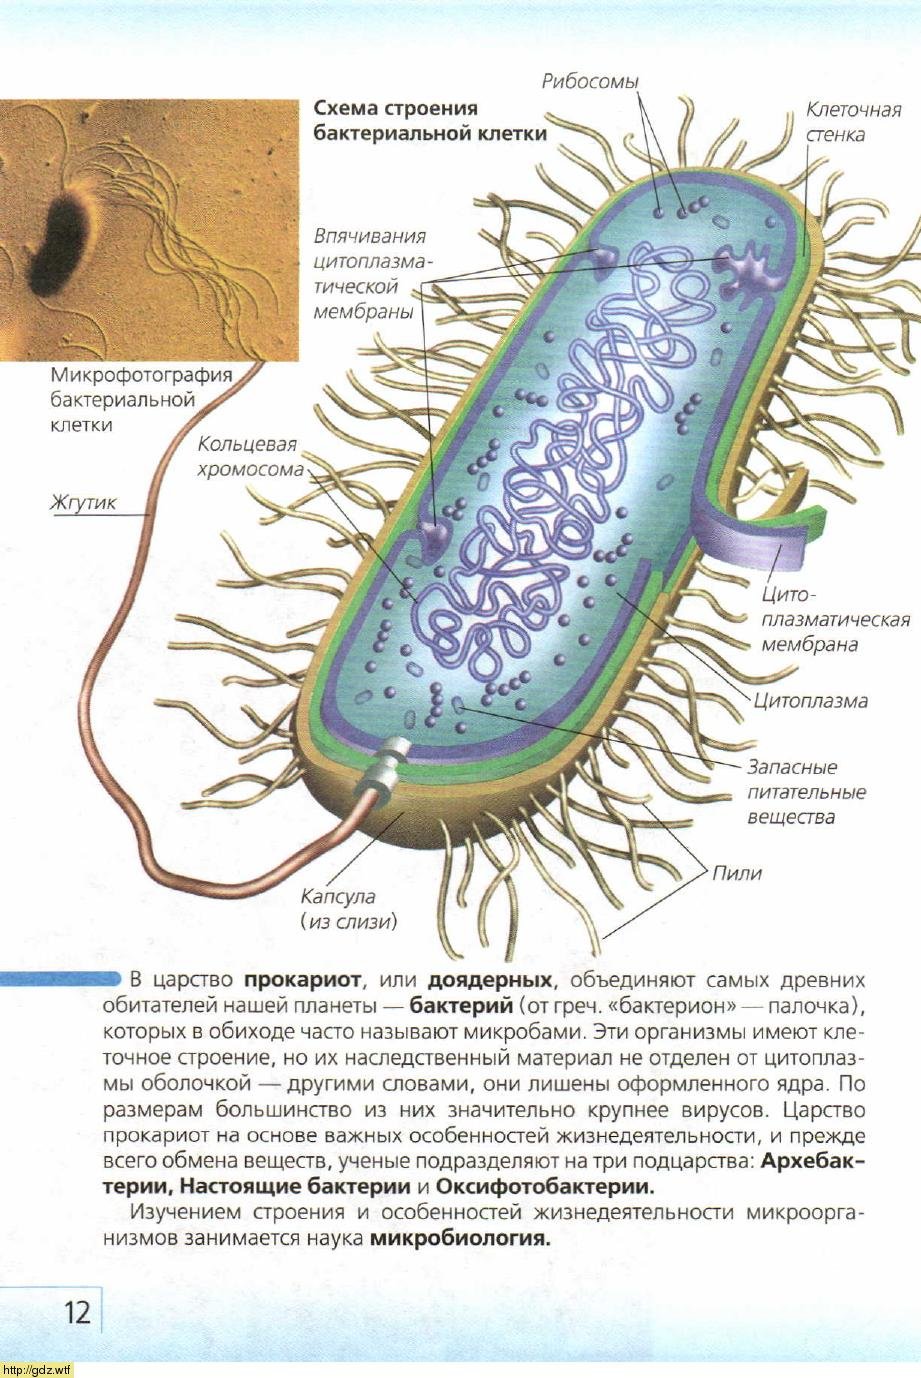 Схематическое изображение строения бактериальной клетки